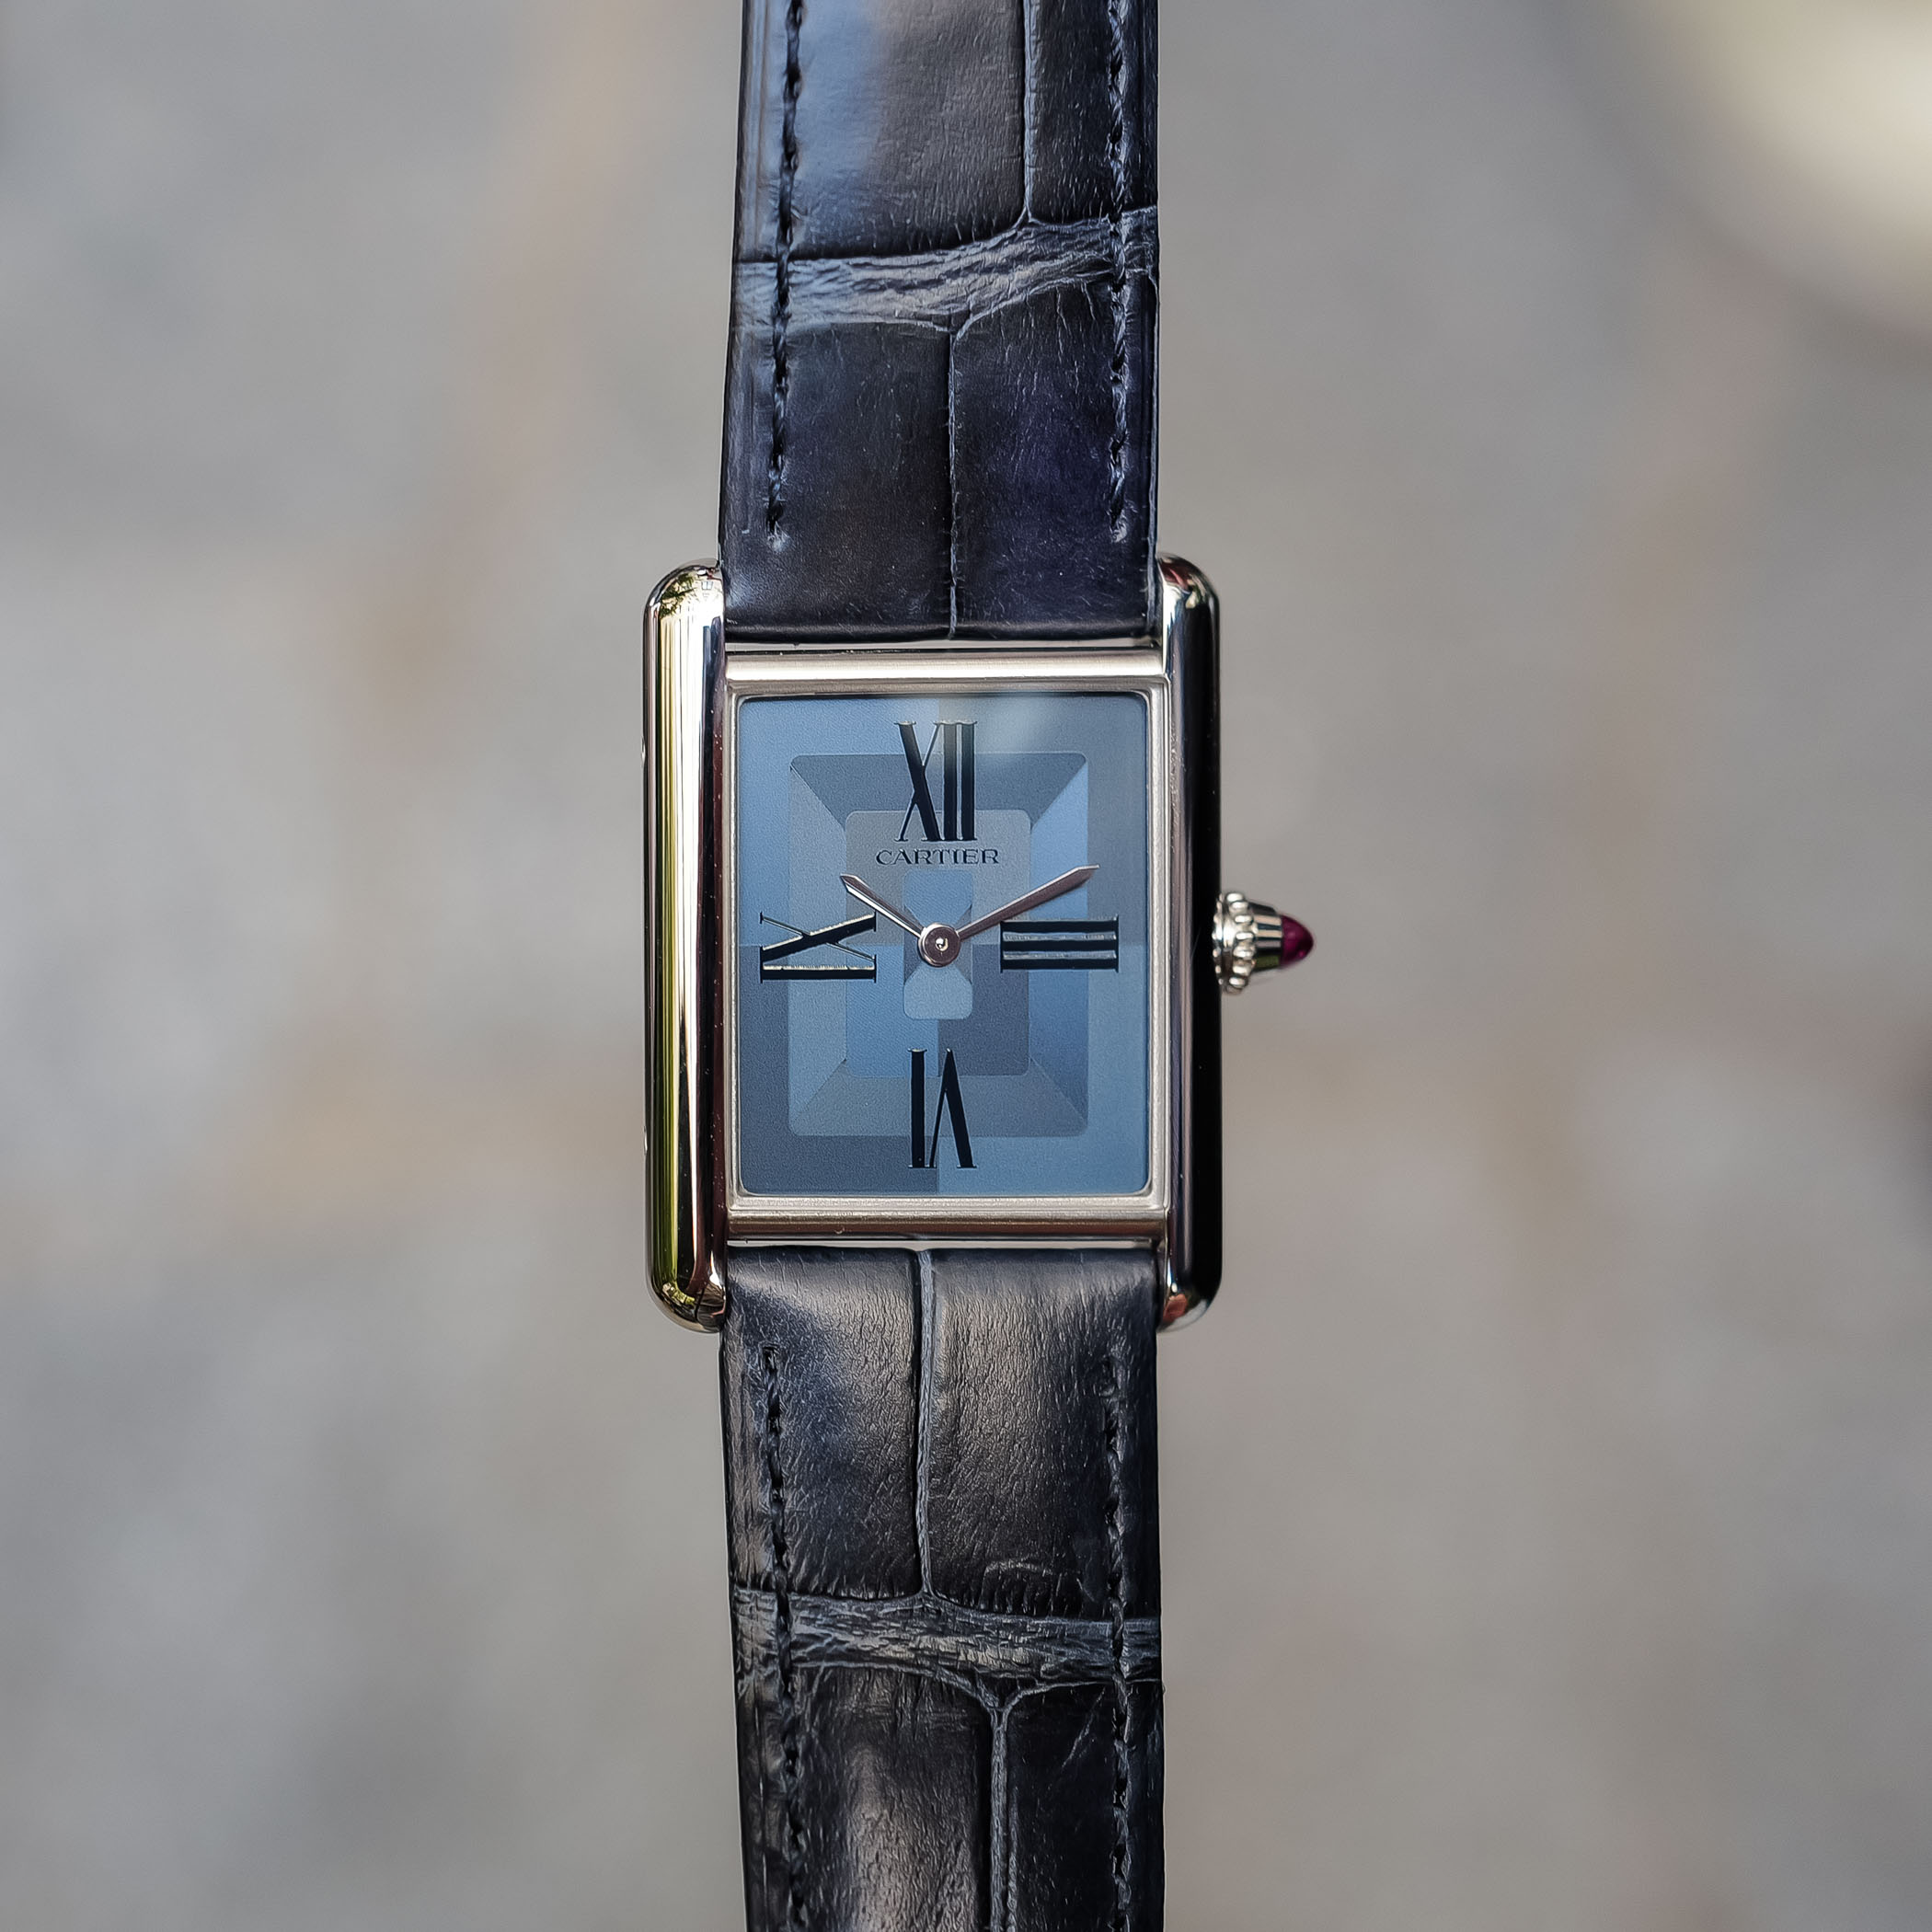 Лимитированная серия платиновых часов Louis Cartier, выпускаемая только в Европе